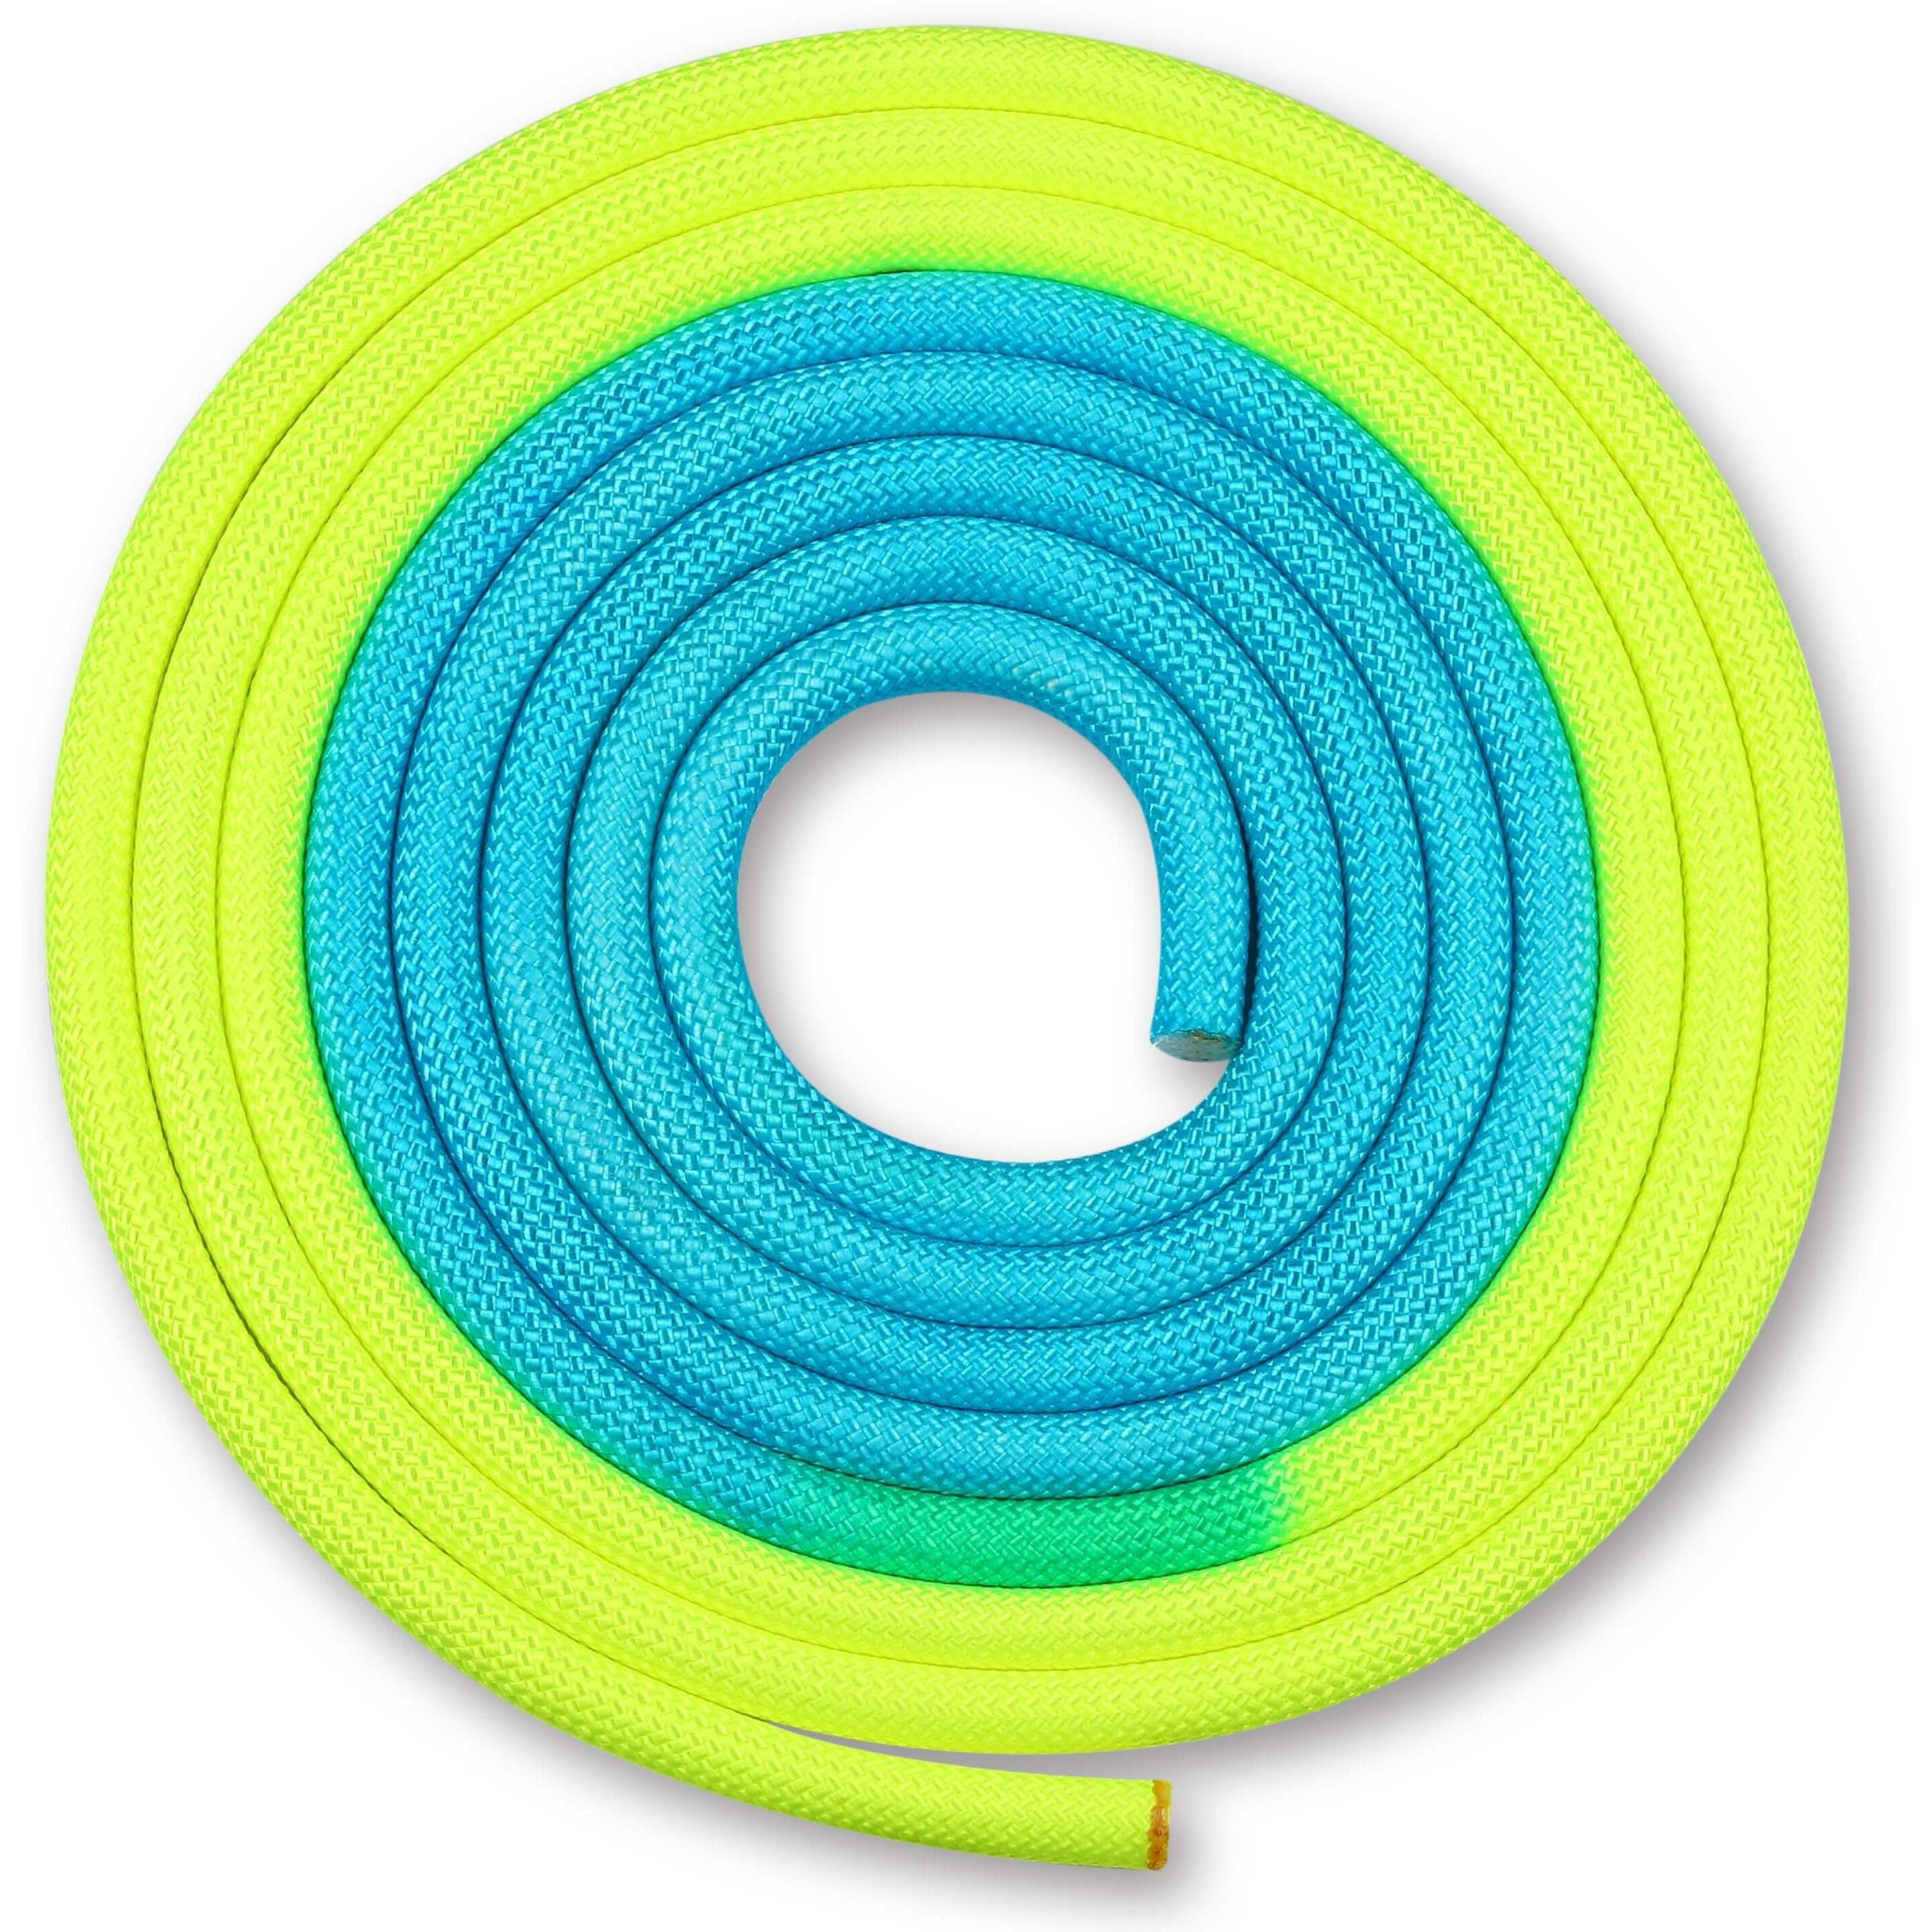 Cuerda Para Gimnasia Rítmica Ponderada 165g Indigo Bicolor 3 M - amarillo-azul - 